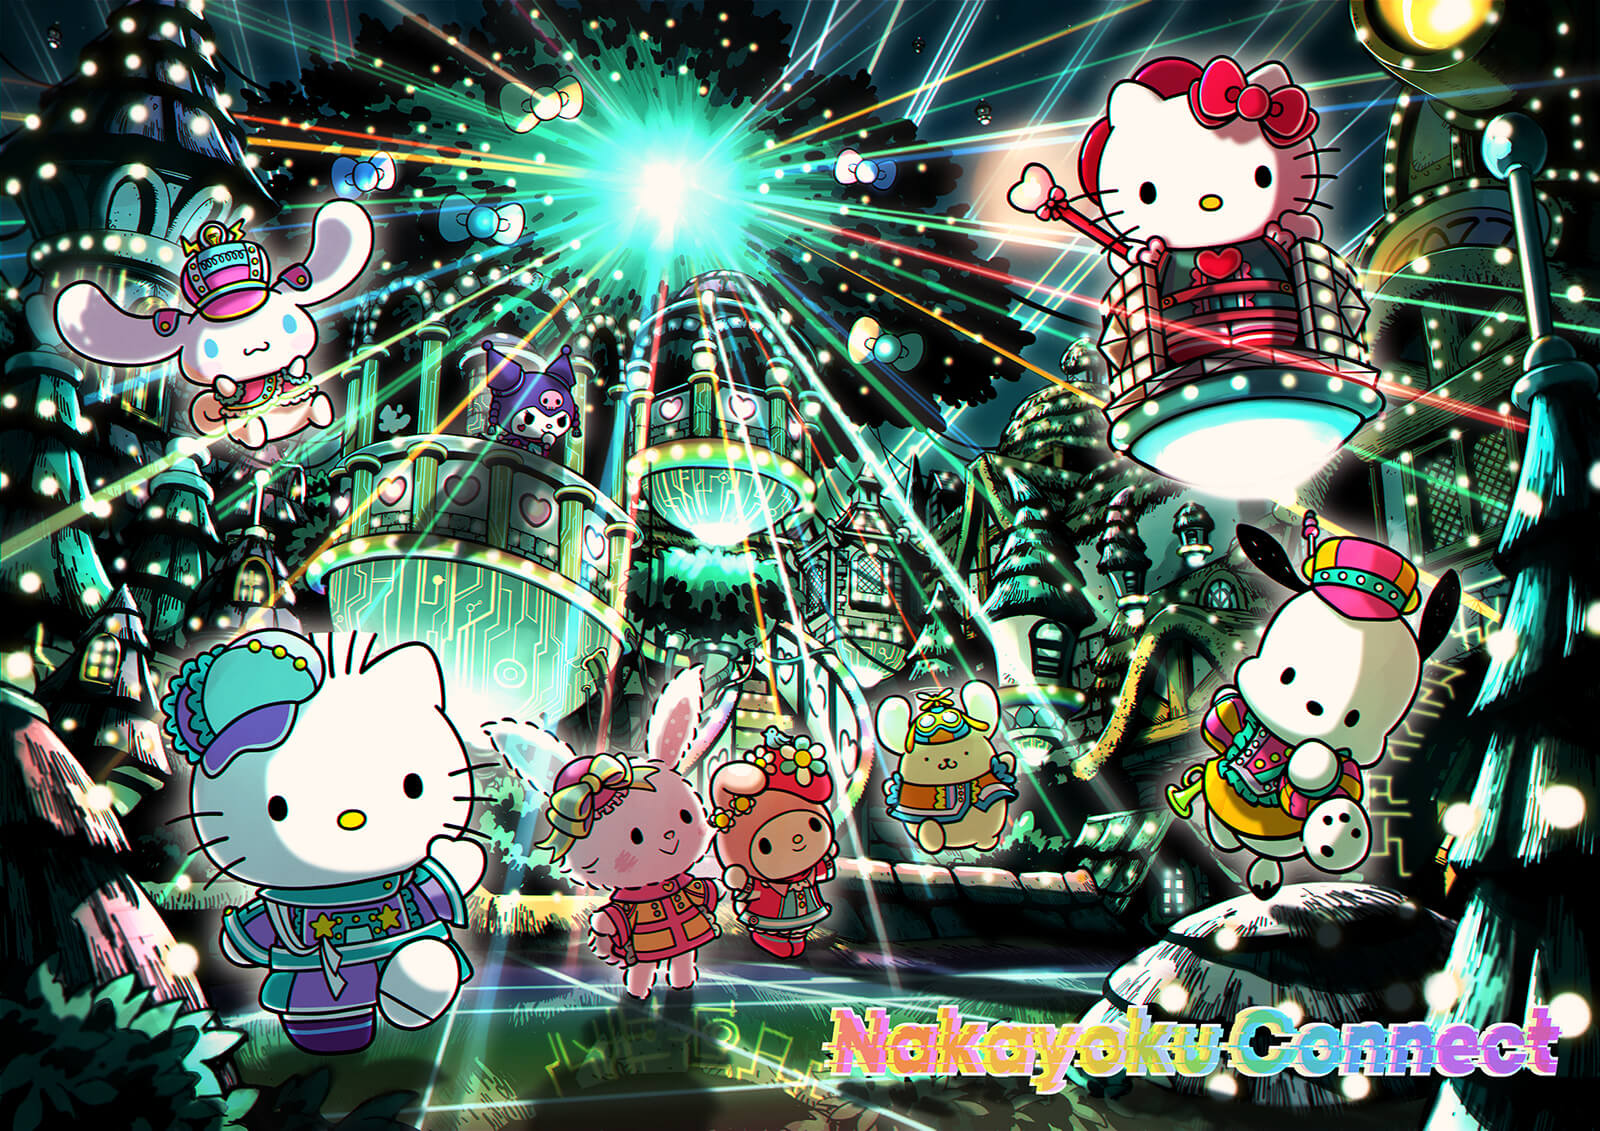 Sanrio Puroland Review: Enjoying the Hello Kitty Theme Park - Japan Web  Magazine